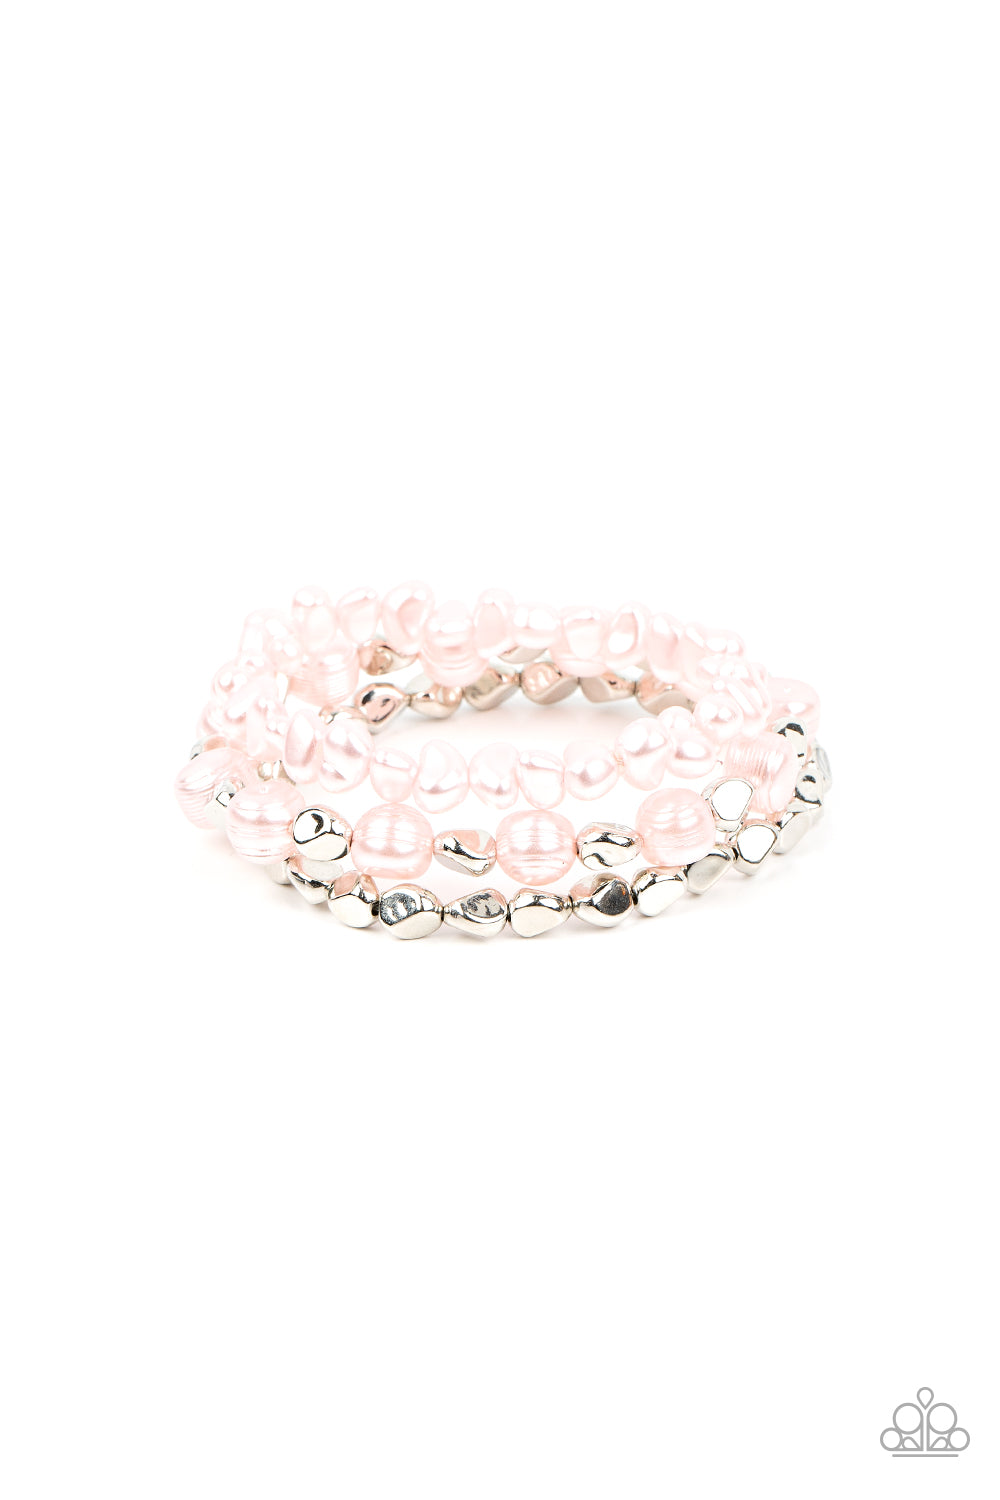 Shoreside Soiree - pink - Paparazzi bracelet – JewelryBlingThing